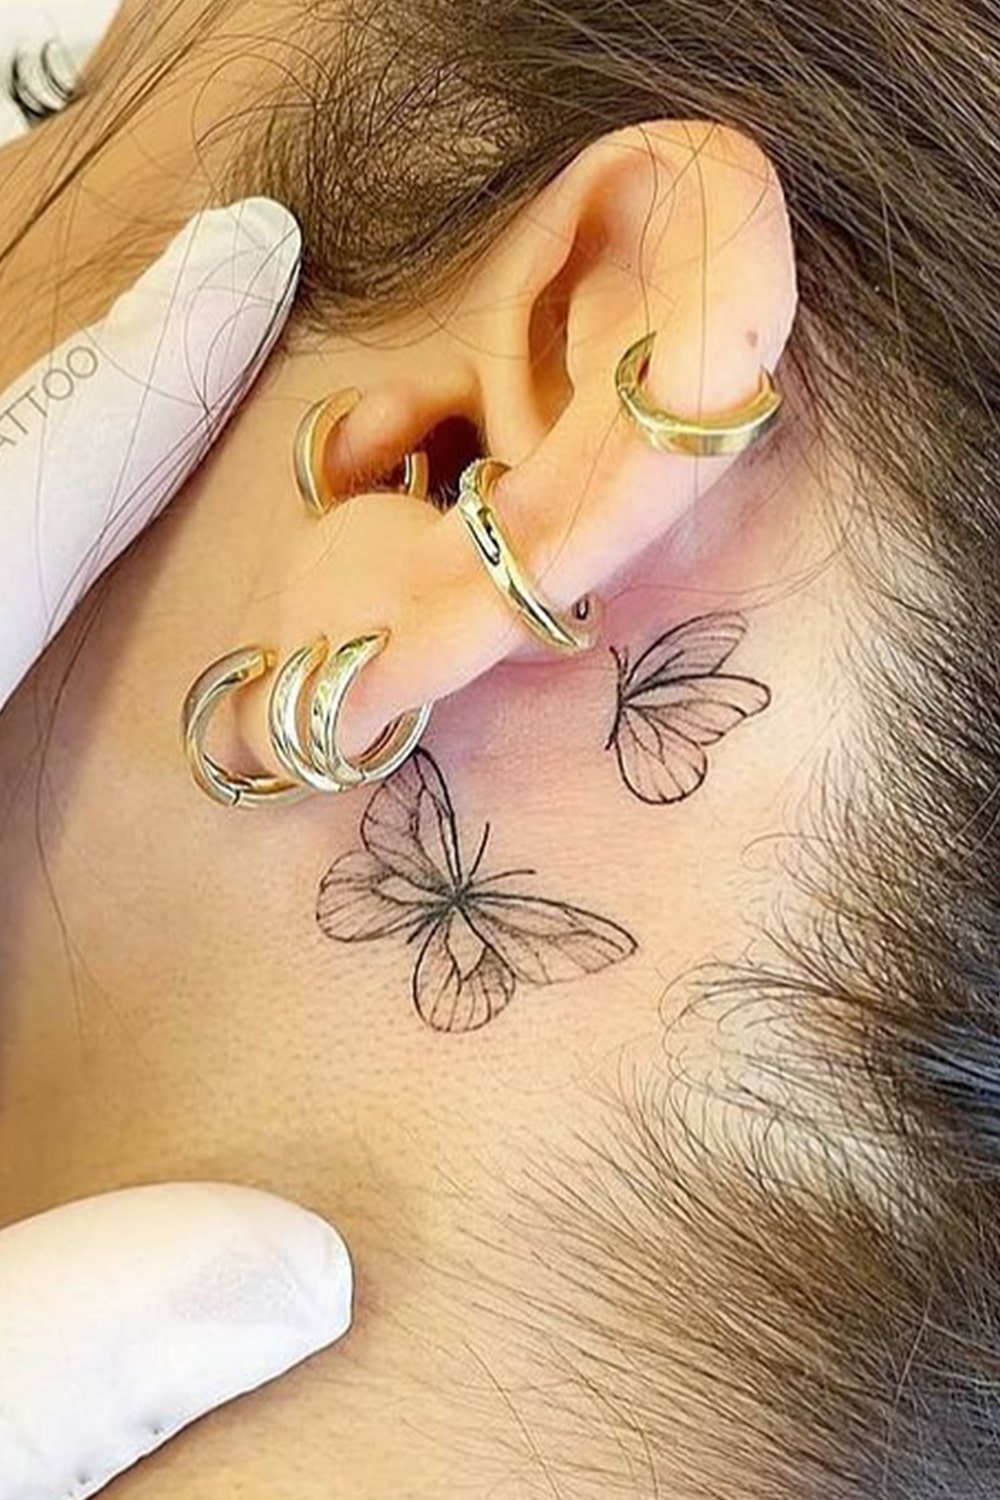 tatuaje femenino en oreja 25